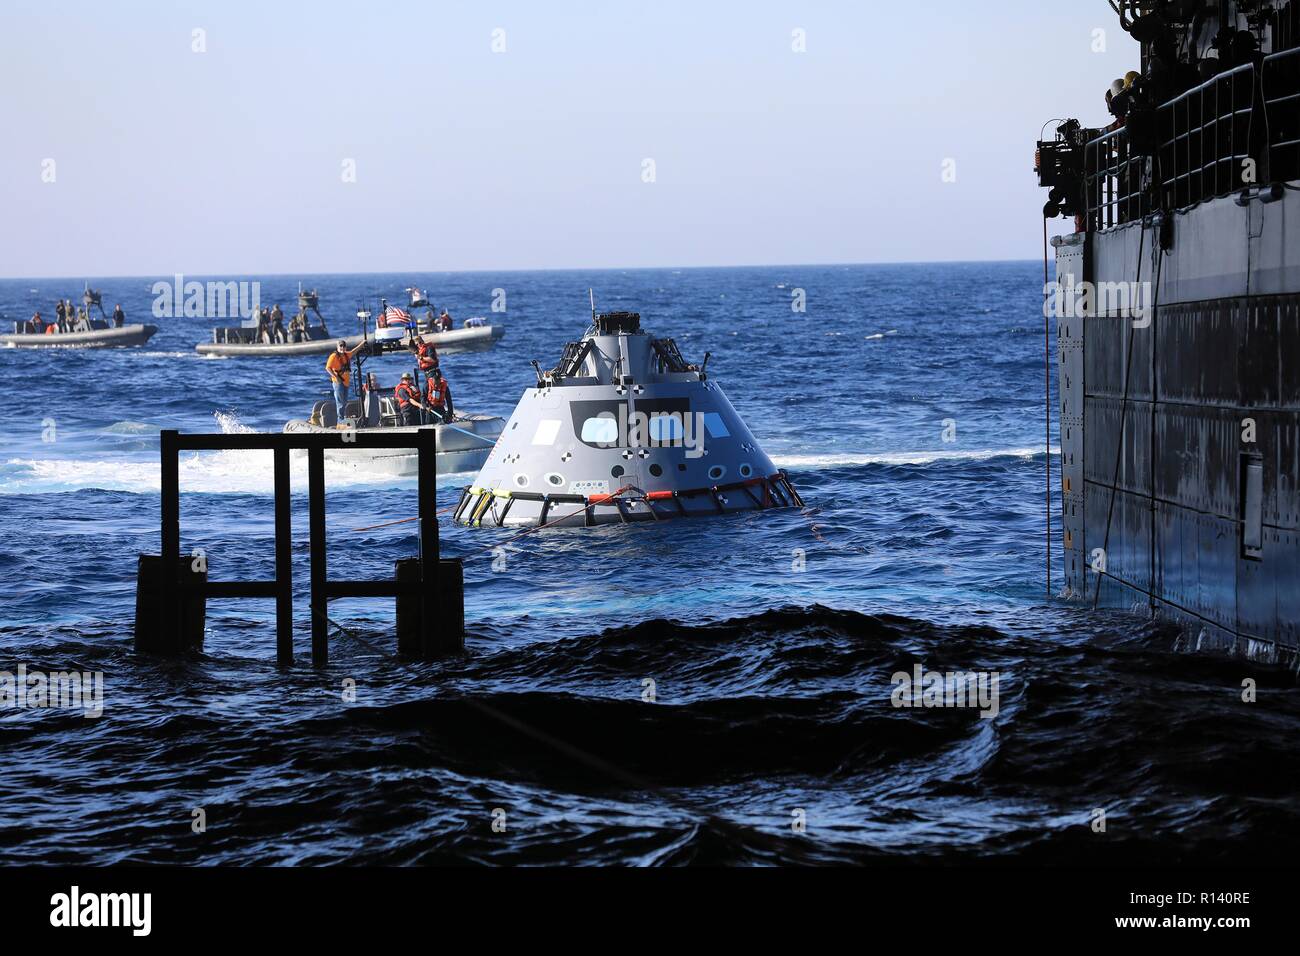 La NASA squadra di recupero e U.S. Navy divers tirare un mock up versione di Orion la generazione successiva capsula spaziale nel bene del ponte della USS John P. Murtha durante un oceano aperto prova di recupero 31 ottobre 2018 nell'Oceano Pacifico. La NASA e gli Stati Uniti La marina non ha eseguito oceano aperto il recupero di un manned space capsule poiché il progetto Apollo negli anni sessanta e sono le procedure di test e la bulloneria che verranno utilizzate per recuperare il veicolo spaziale Orion dopo che schizza verso il basso nell'Oceano Pacifico seguendo il futuro dello spazio profondo missioni di esplorazione. Foto Stock